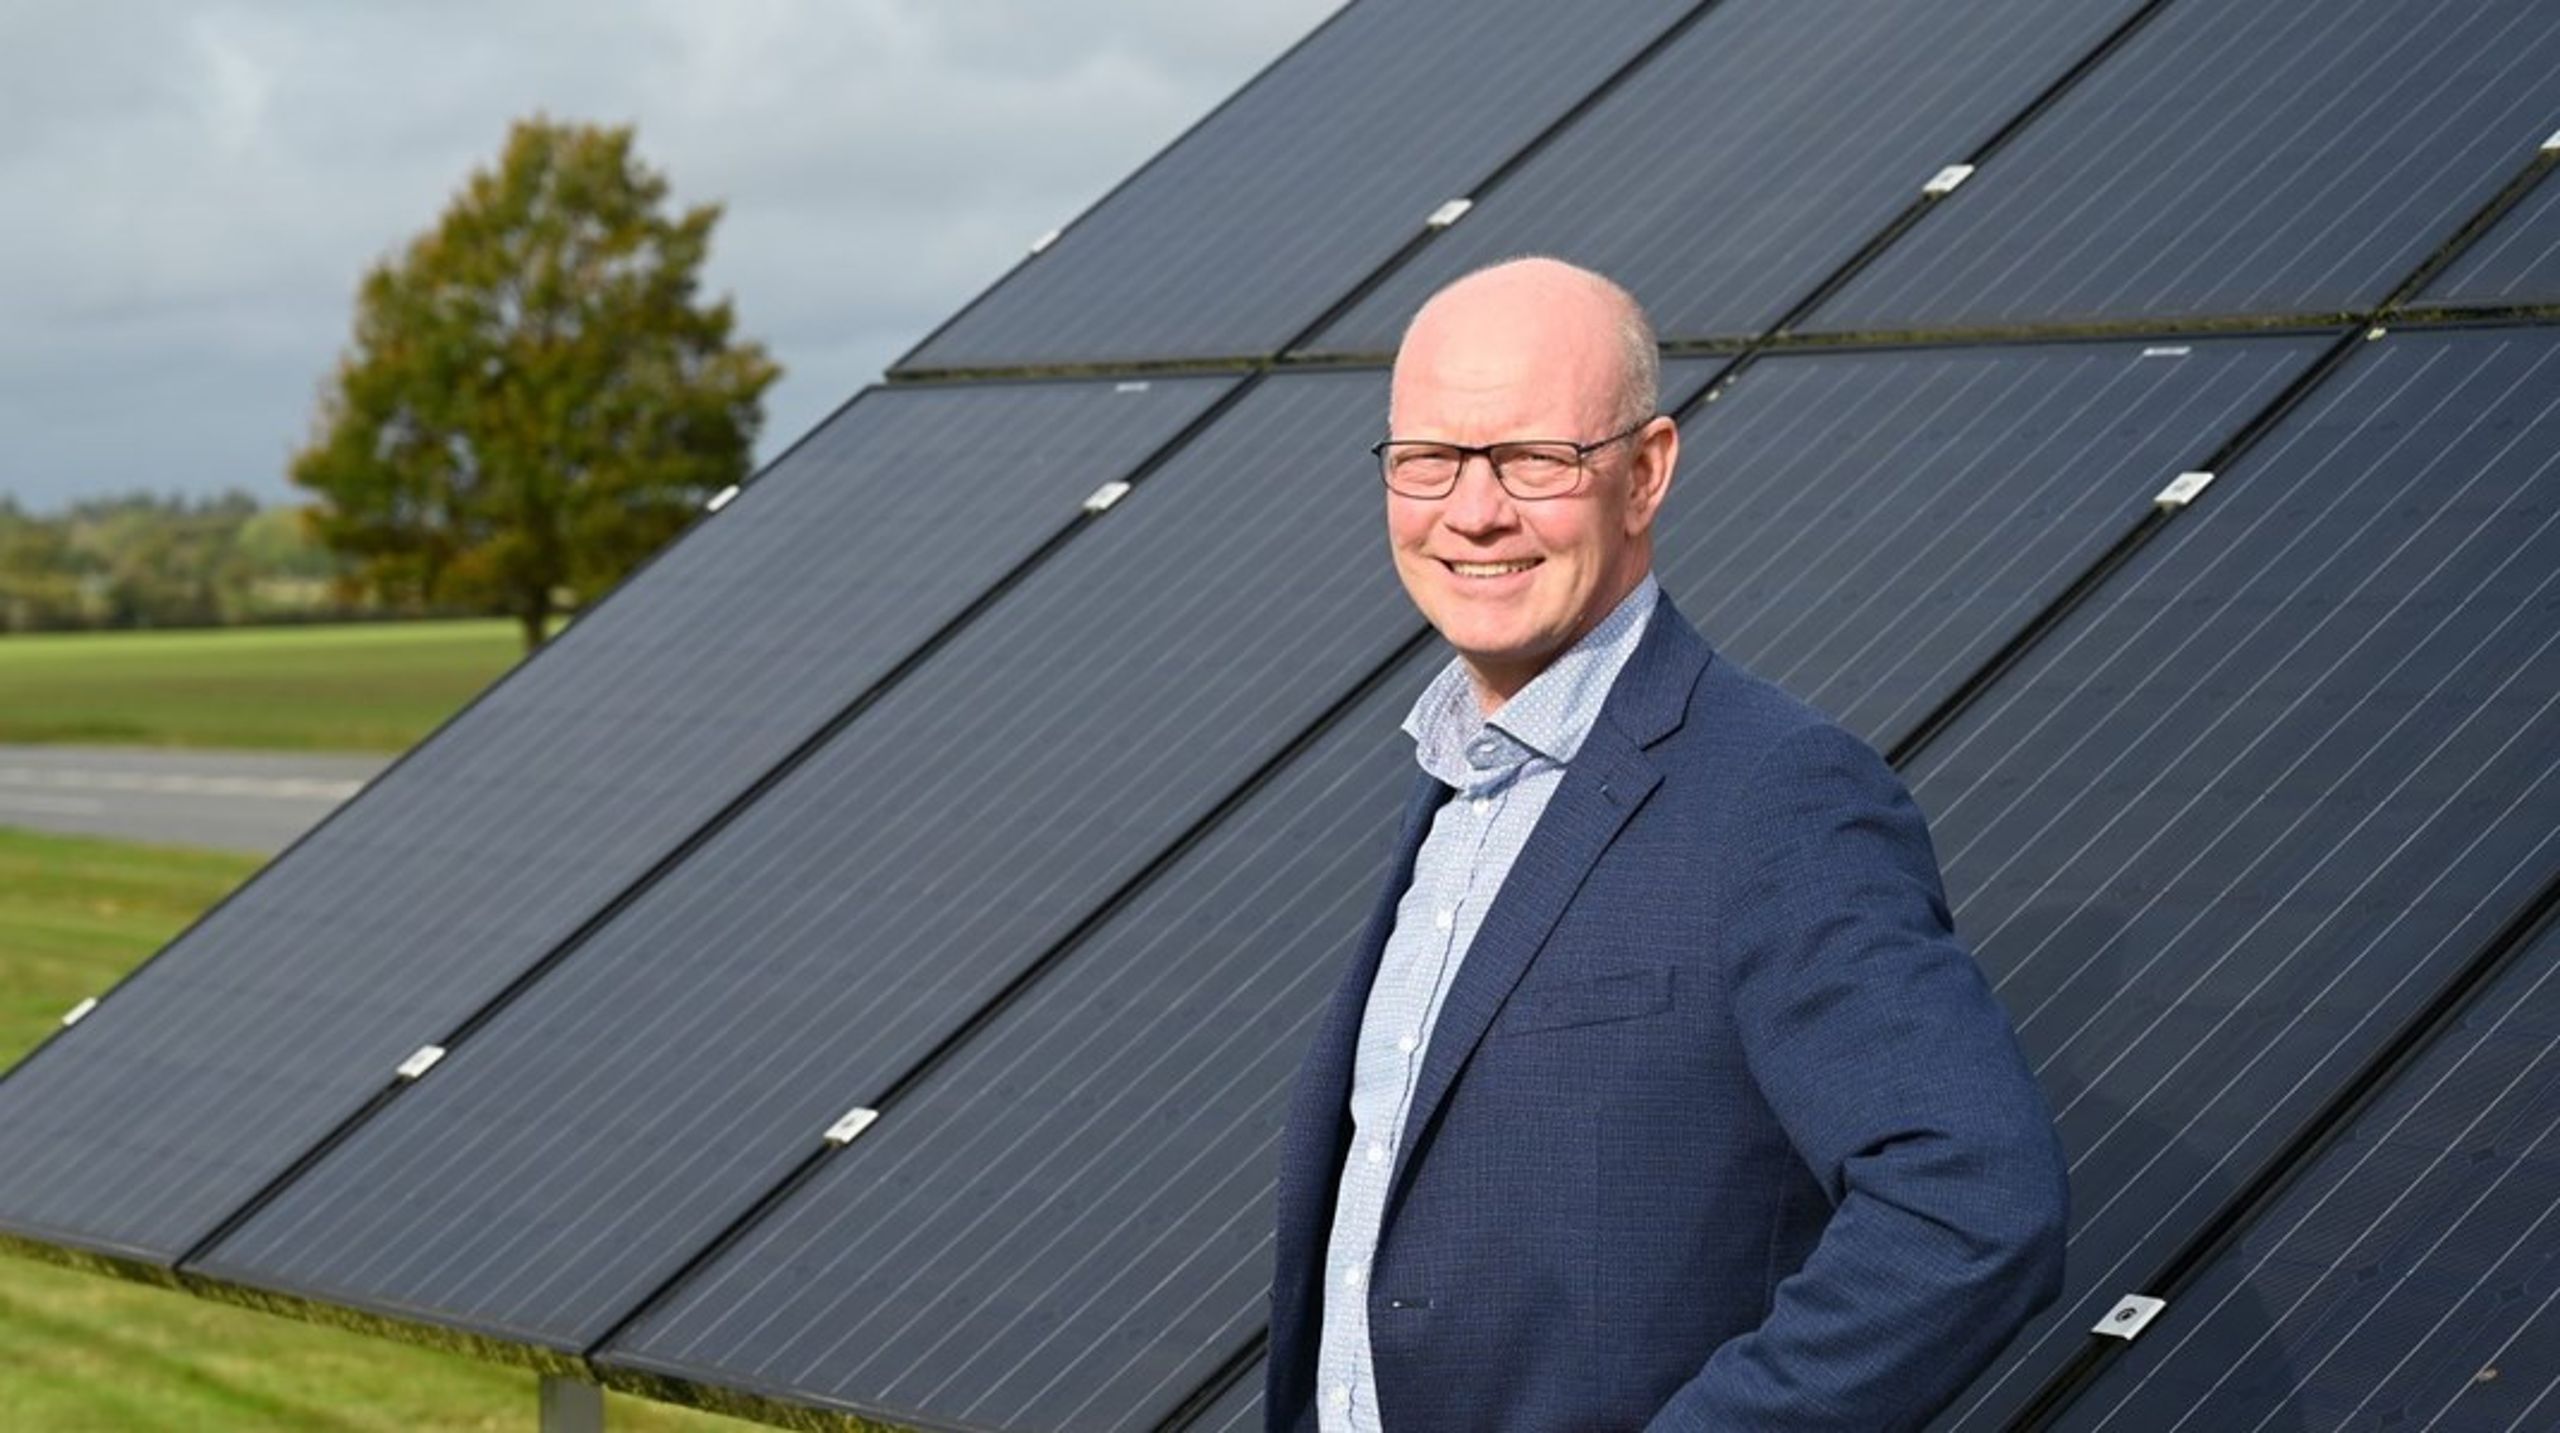 Jørgen Peter Todsen overtager den daglige ledelse af solcellefirmaet KlimaEnergi, der i kraft af energikrisen og øgede ønsker om grøn omstilling er i hastig vækst.<br><br>